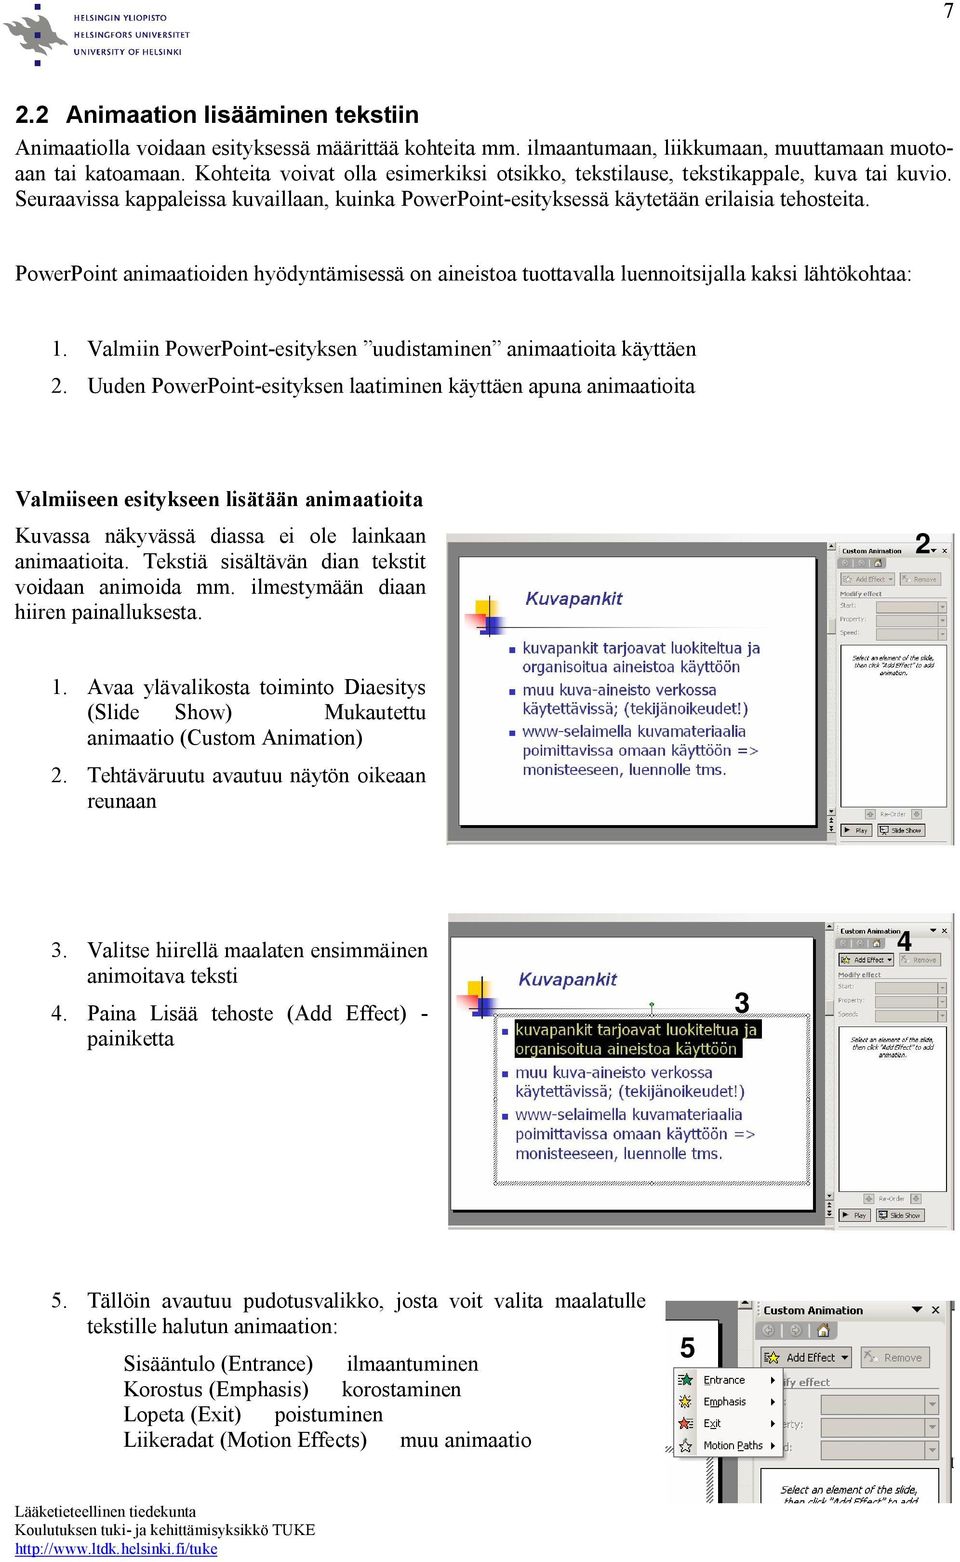 PowerPoint animaatioiden hyödyntämisessä on aineistoa tuottavalla luennoitsijalla kaksi lähtökohtaa: 1. Valmiin PowerPoint-esityksen uudistaminen animaatioita käyttäen.